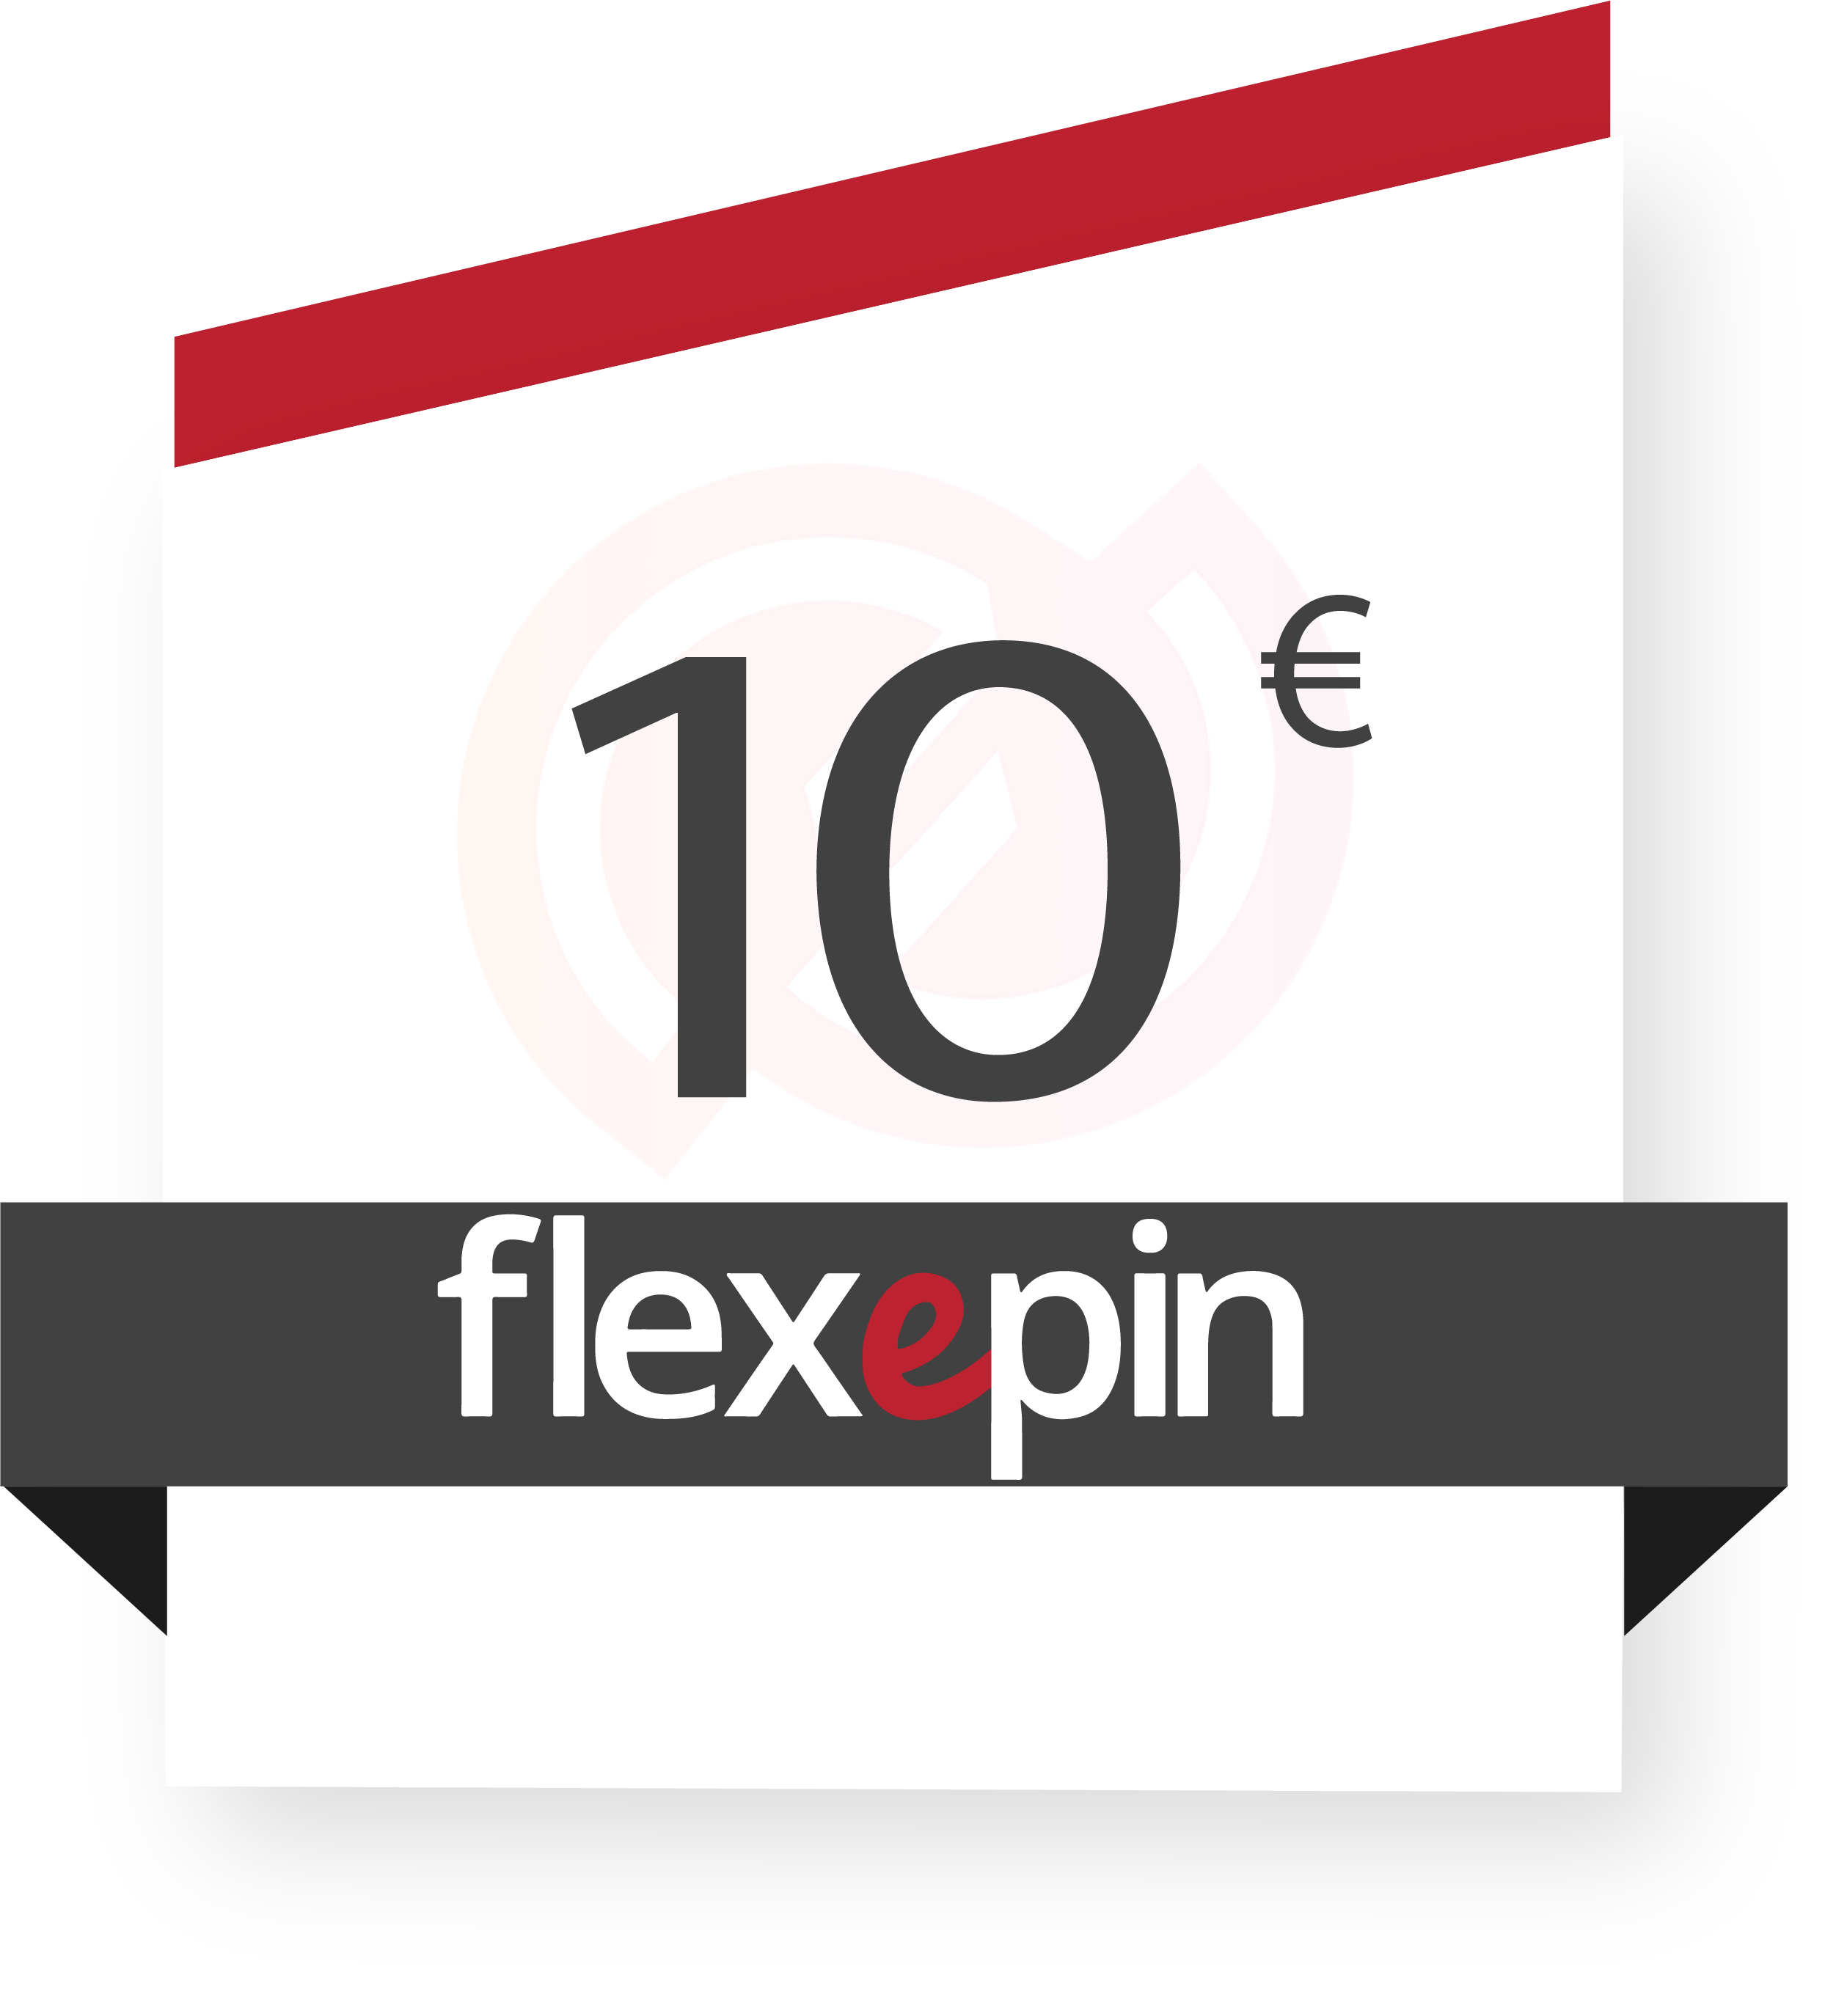 Flexepin 10€